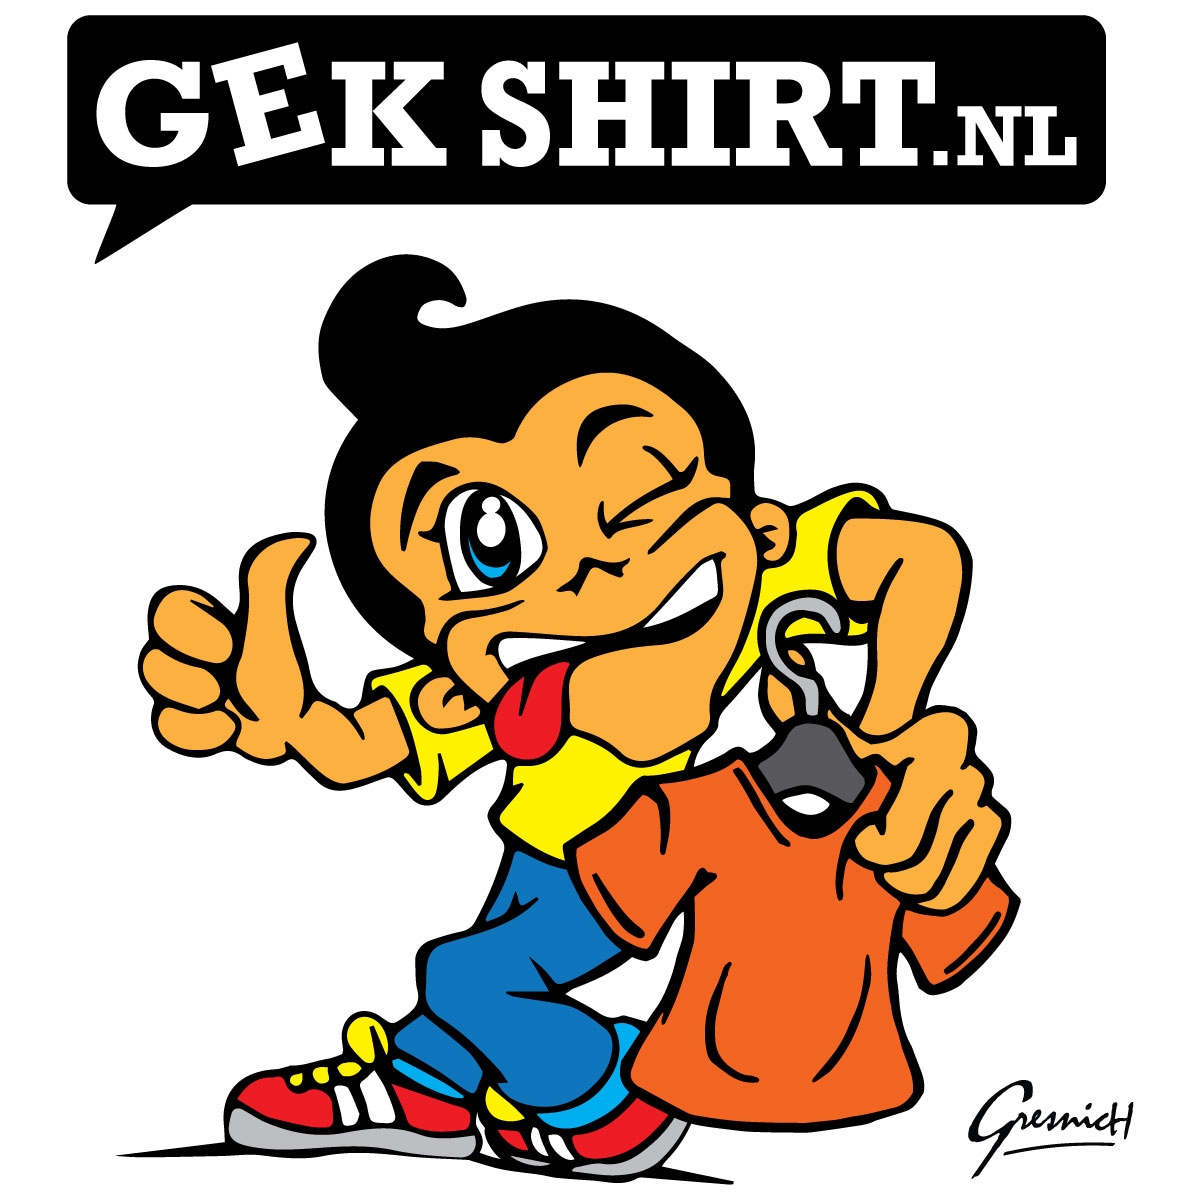 Gekshirt logo